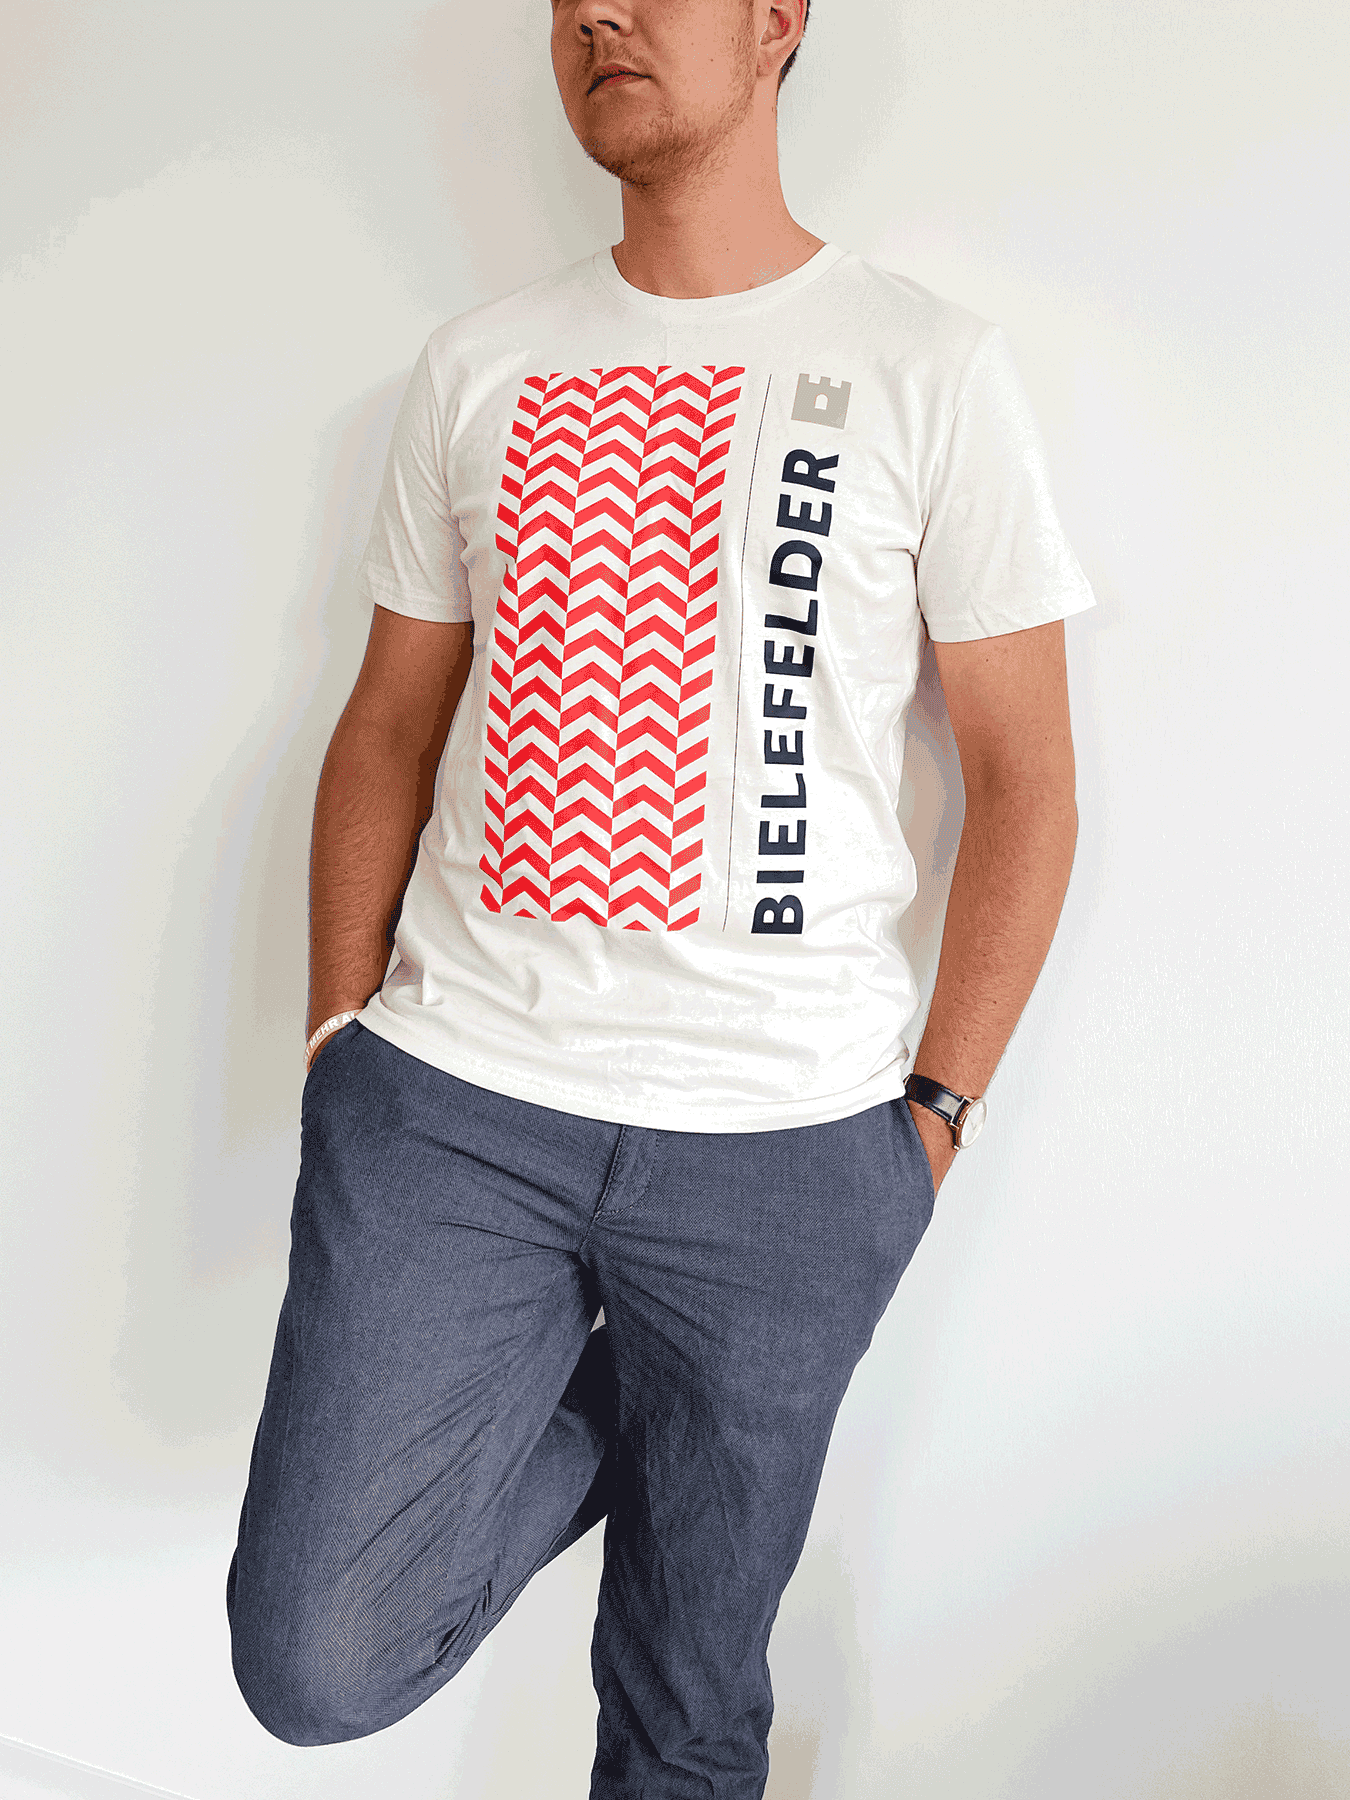 Mann im Bielefelder T-Shirt